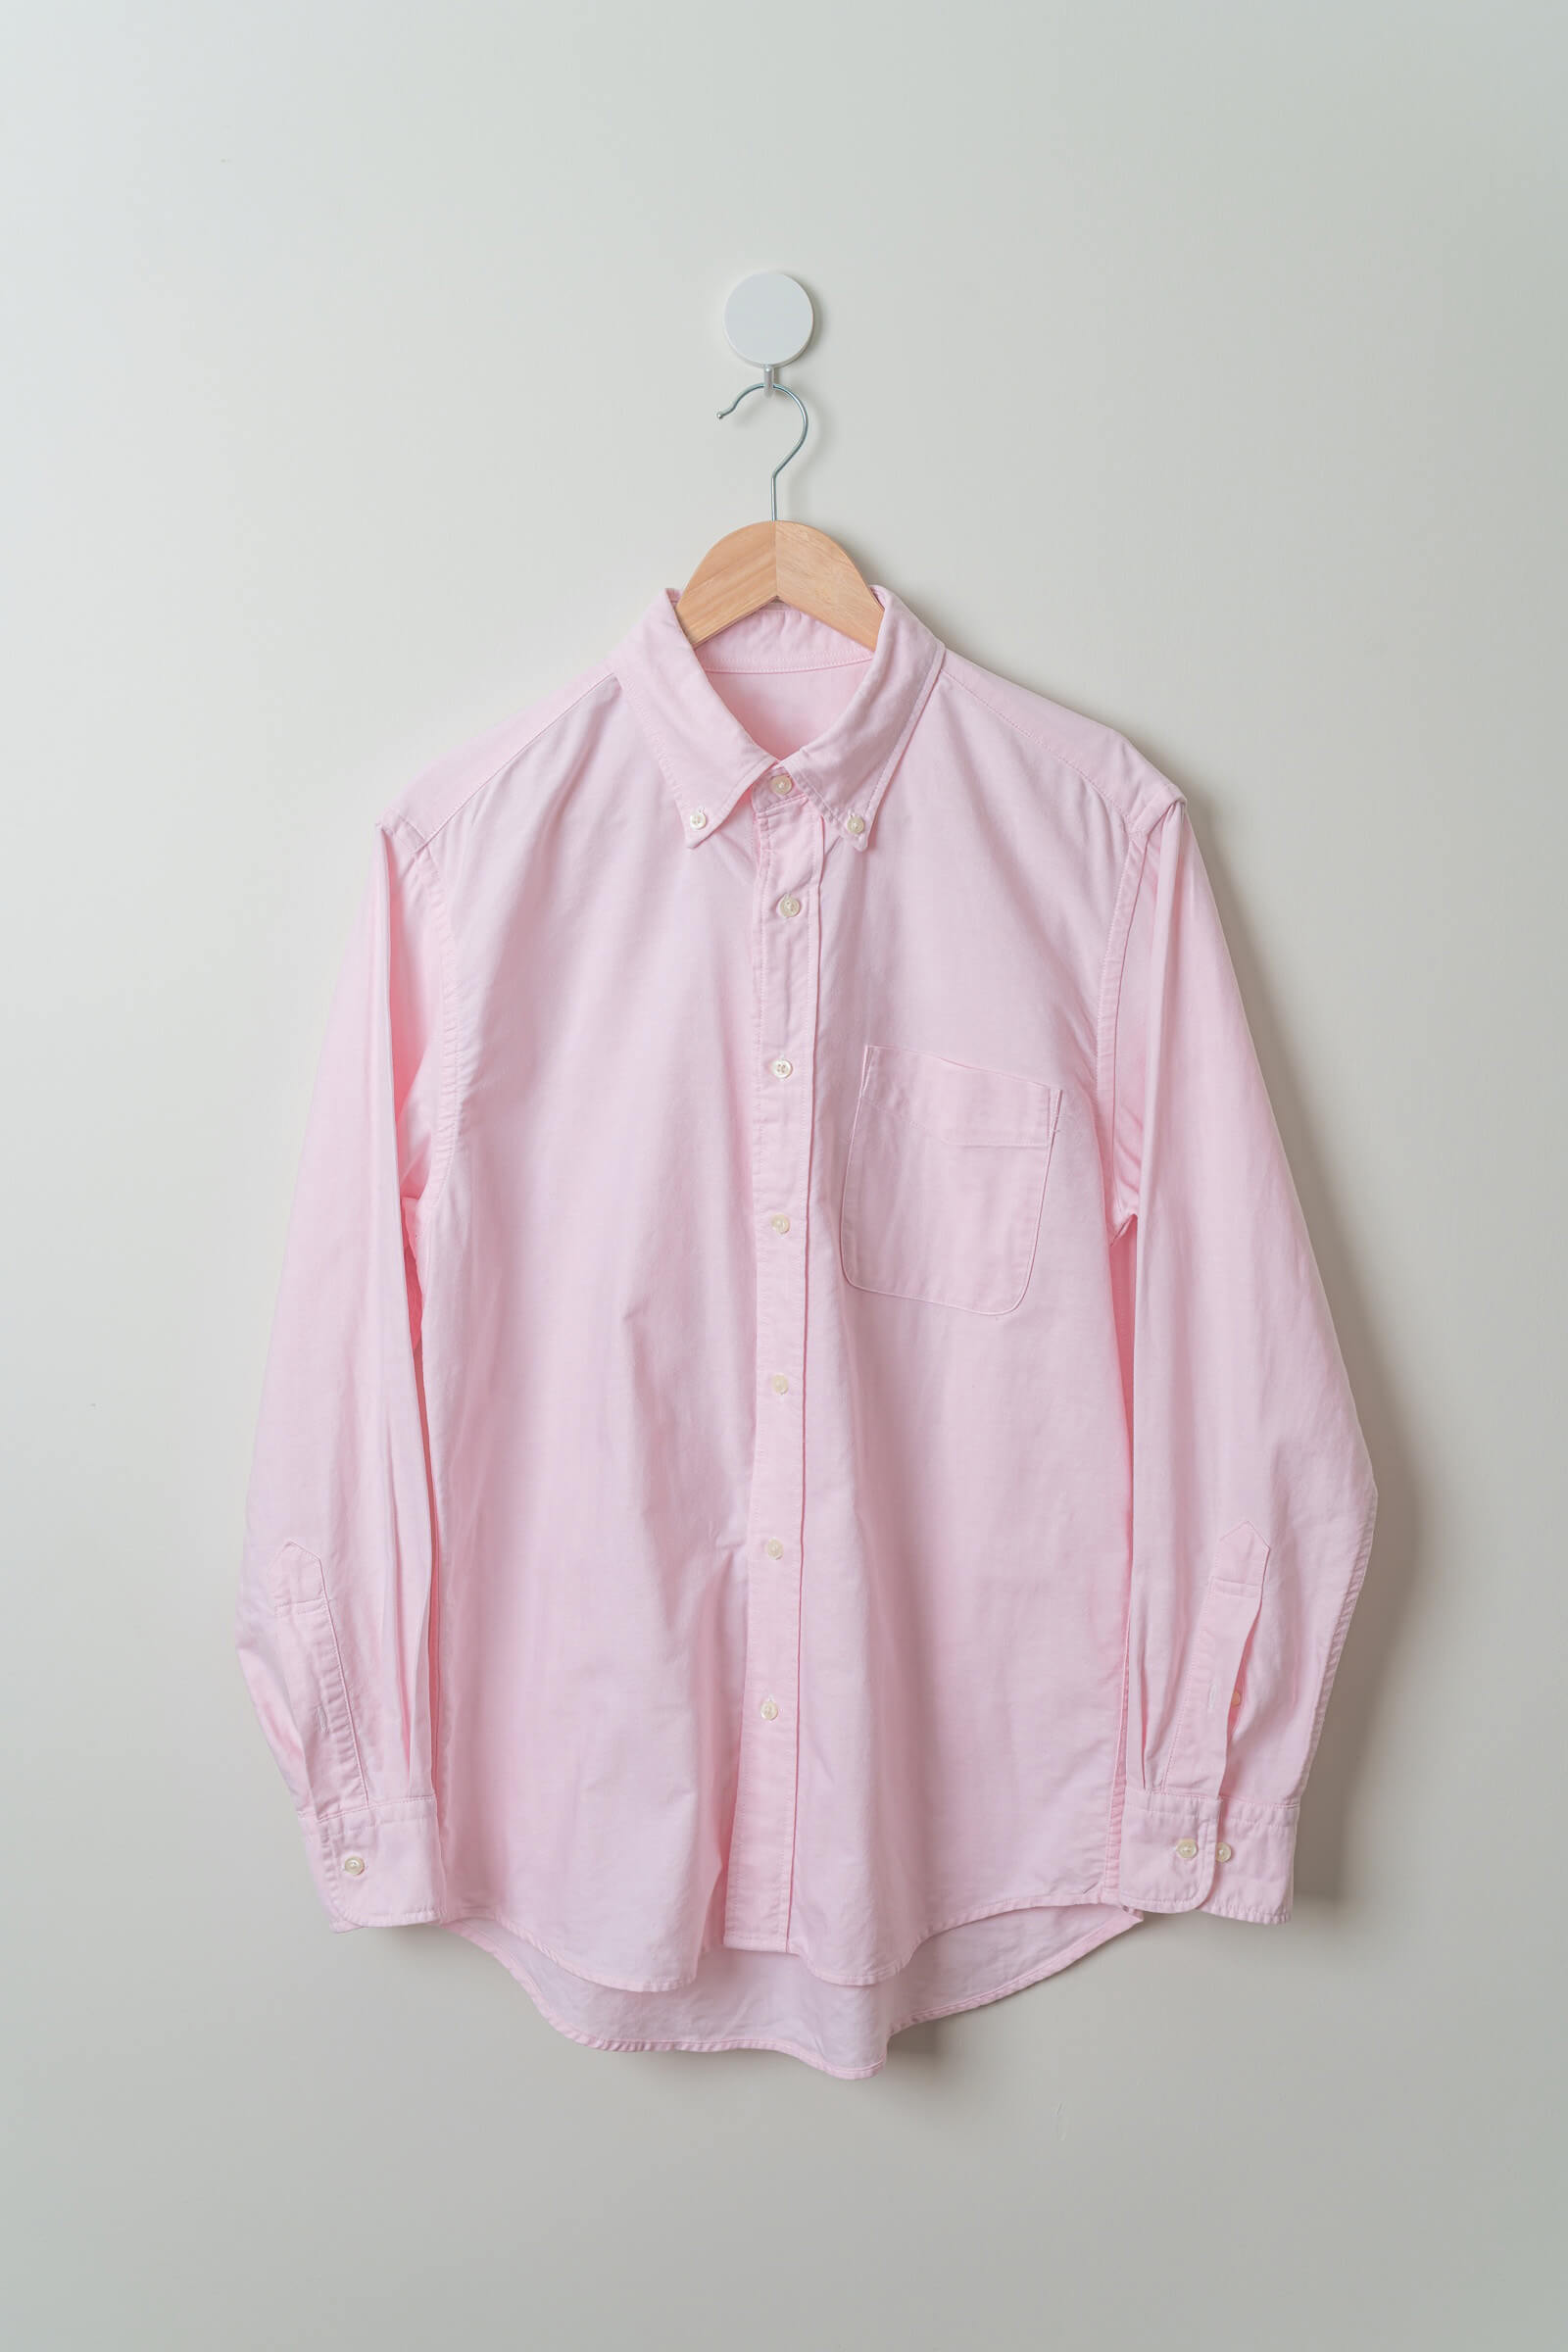 Dress Shirt / Pink